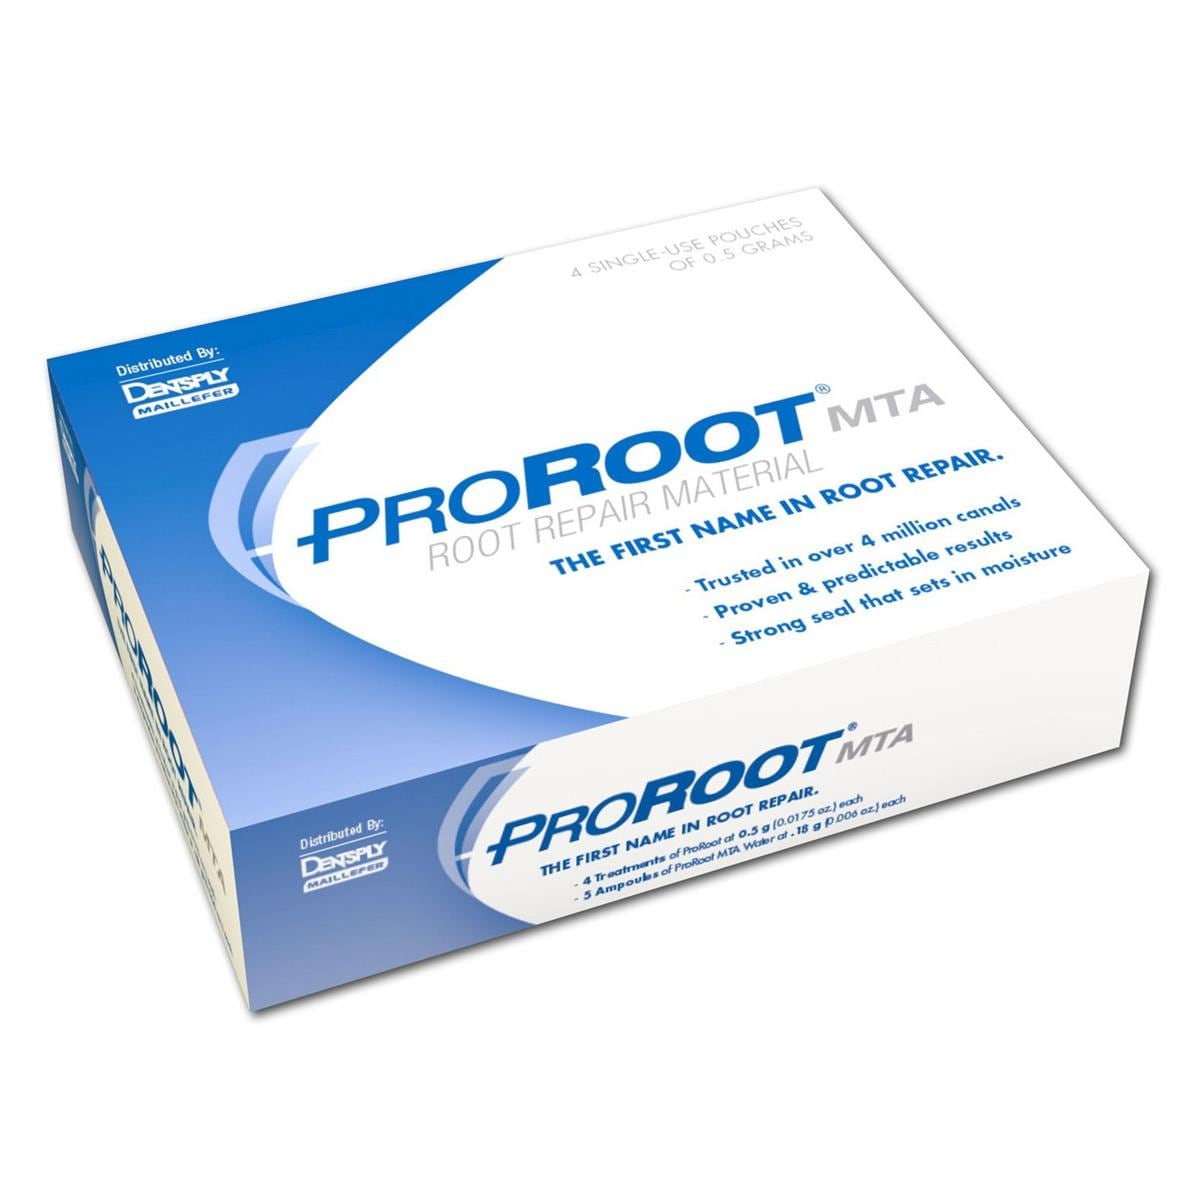 ProRoot MTA White - navulling - Verpakking 4x 0,5 g